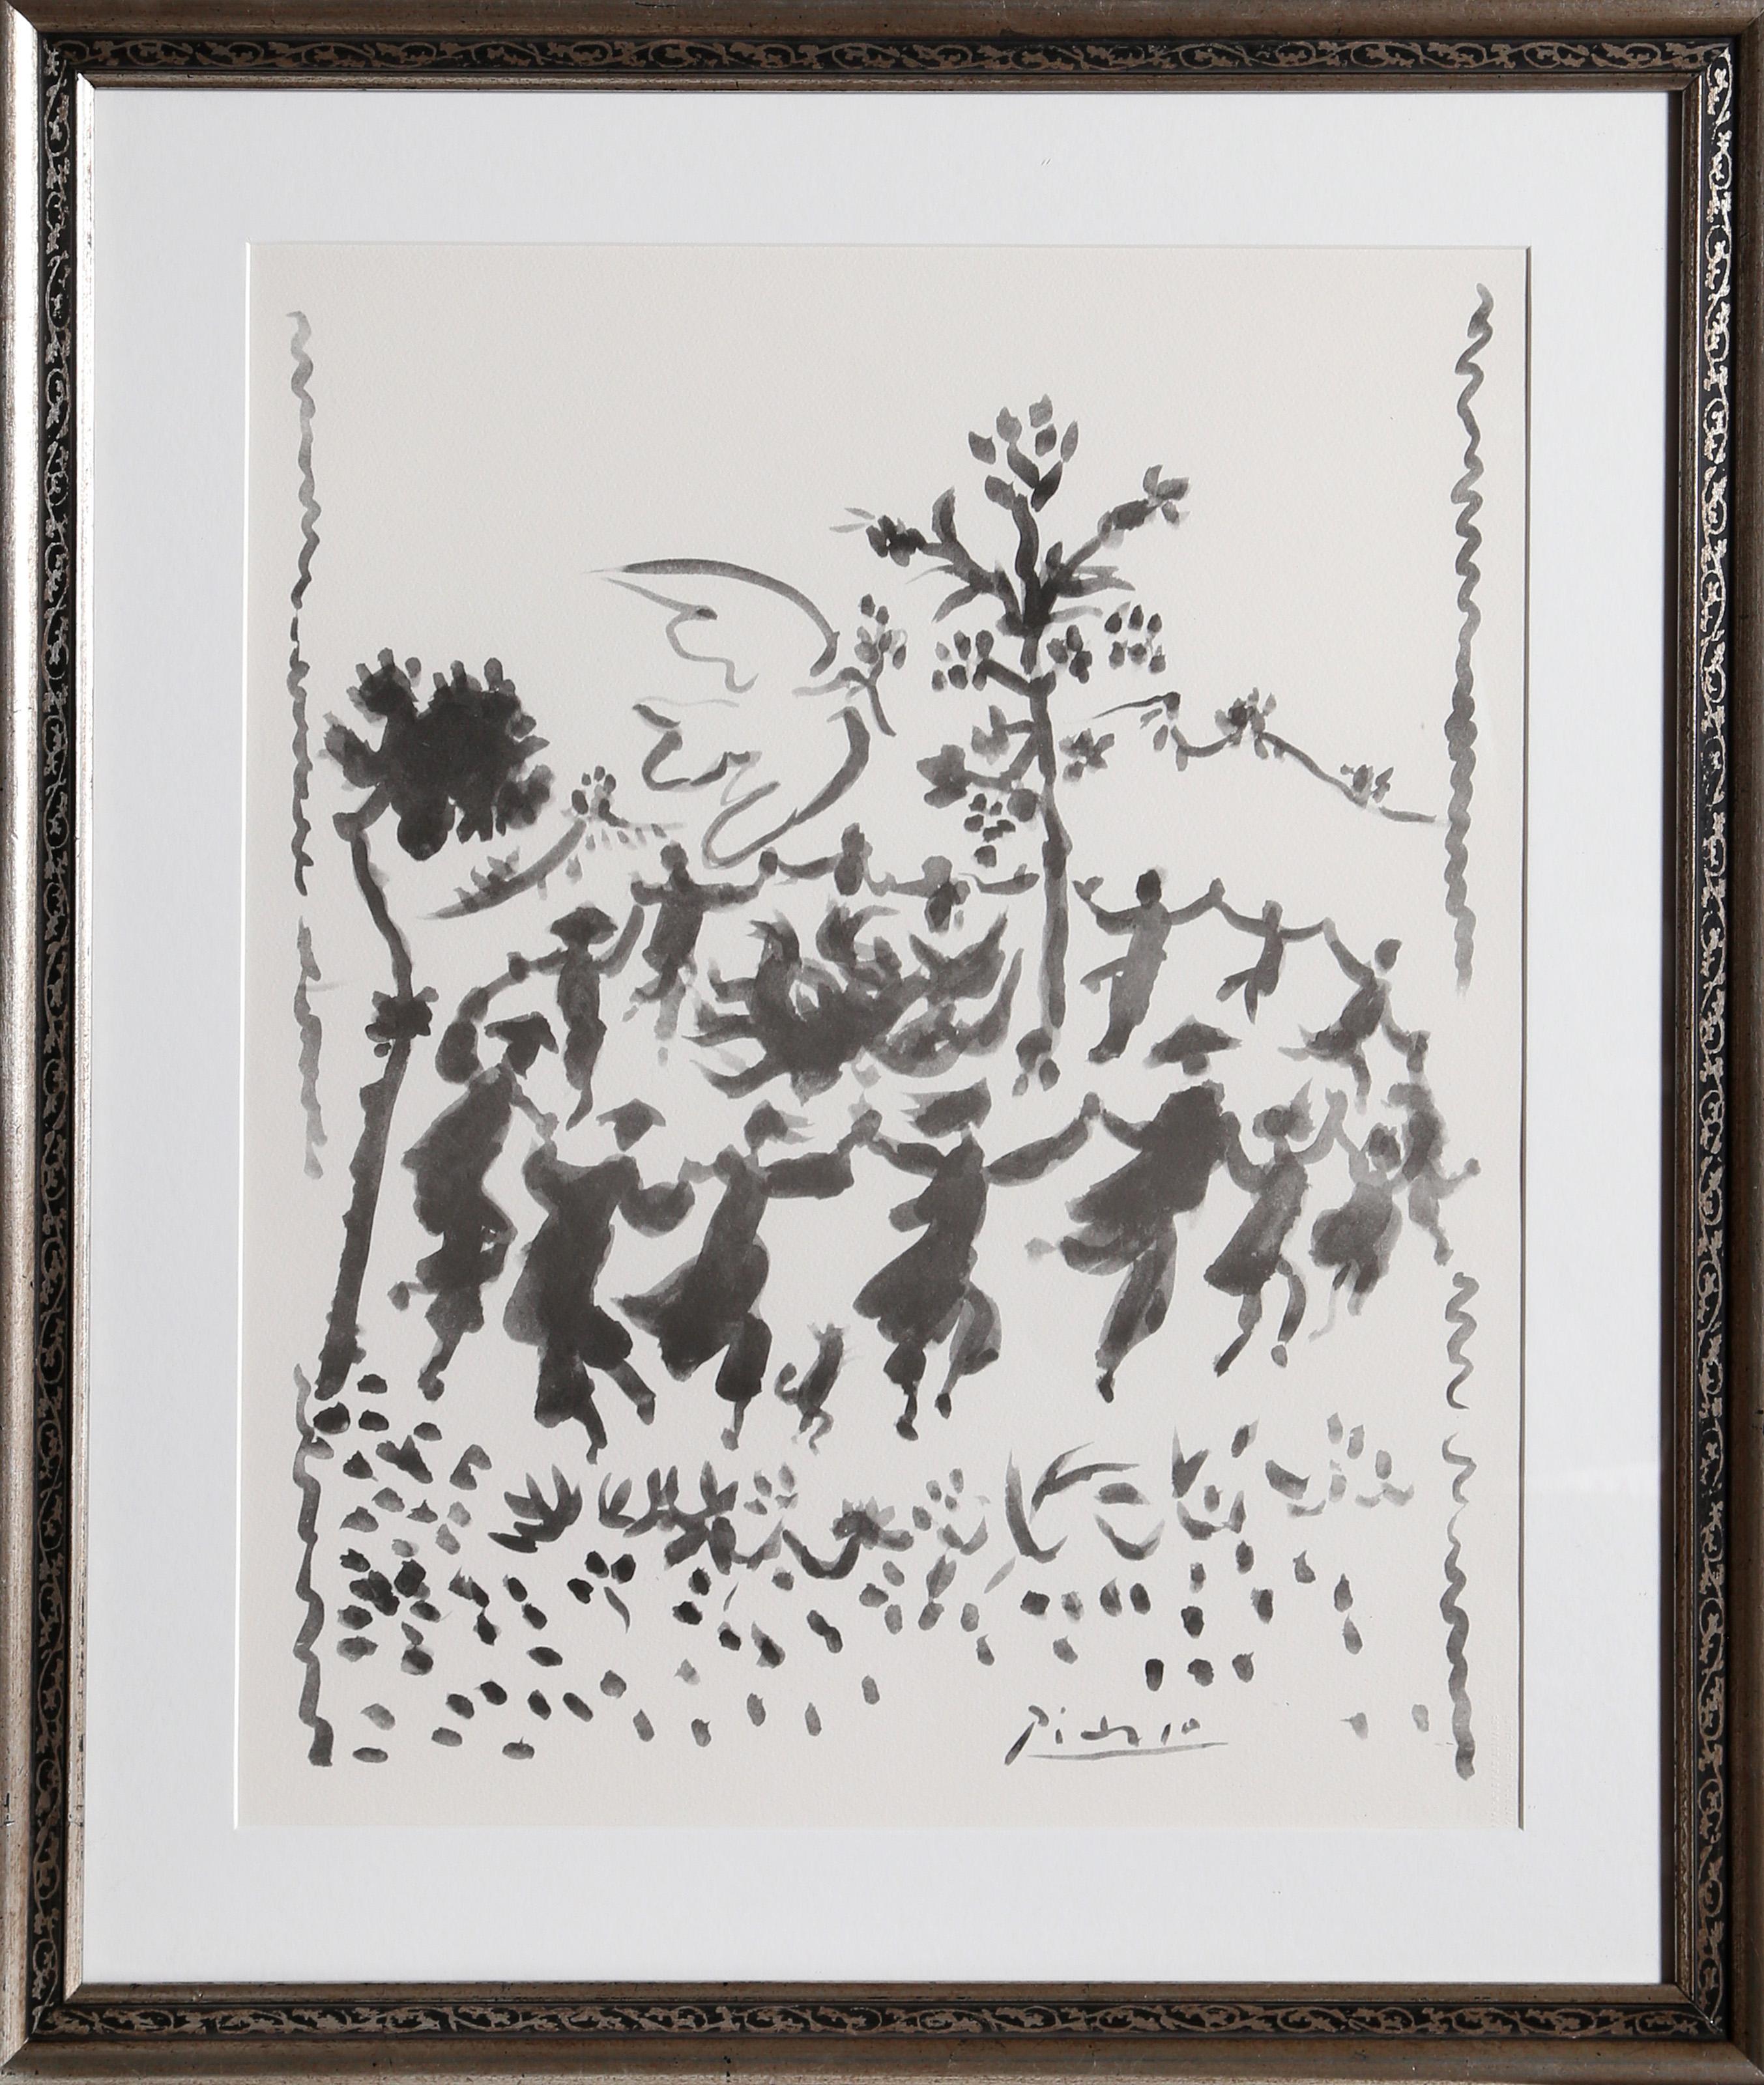 Vives la Paix" est une lithographie de Picasso publiée à l'origine dans "L'Humanité", 08.01.1954. Cette impression de 1961 sur papier d'Arches sous licence de S.P.A.D.E.M. a été publiée par les Editions Combat de la Paix, cachet en bas à